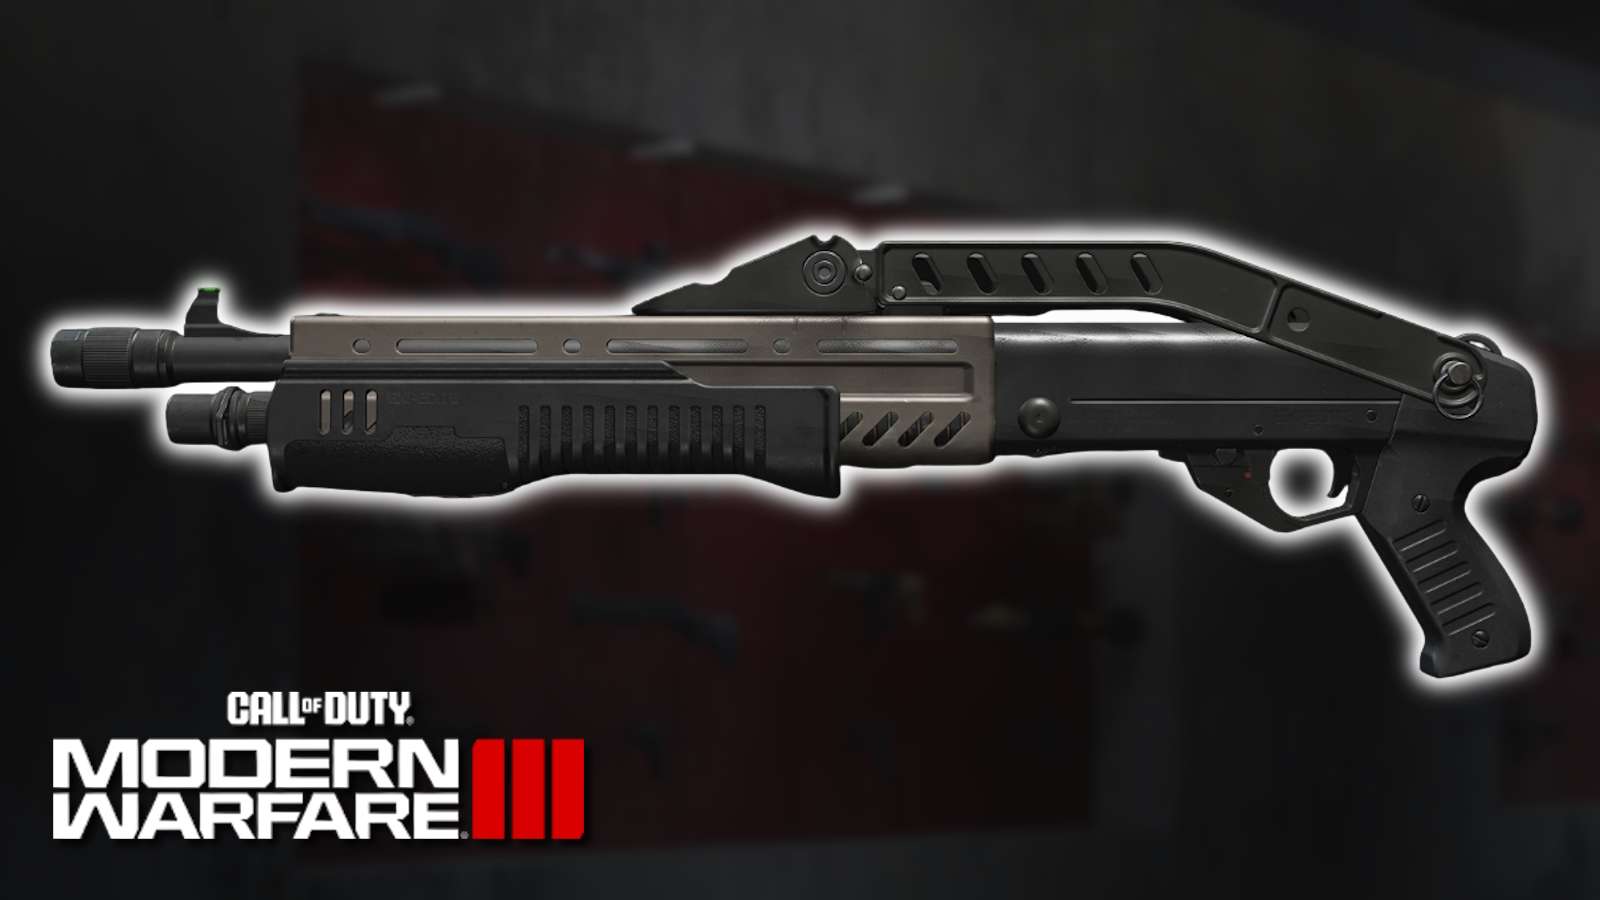 Reclaimer 18 shotgun in Modern Warfare 3